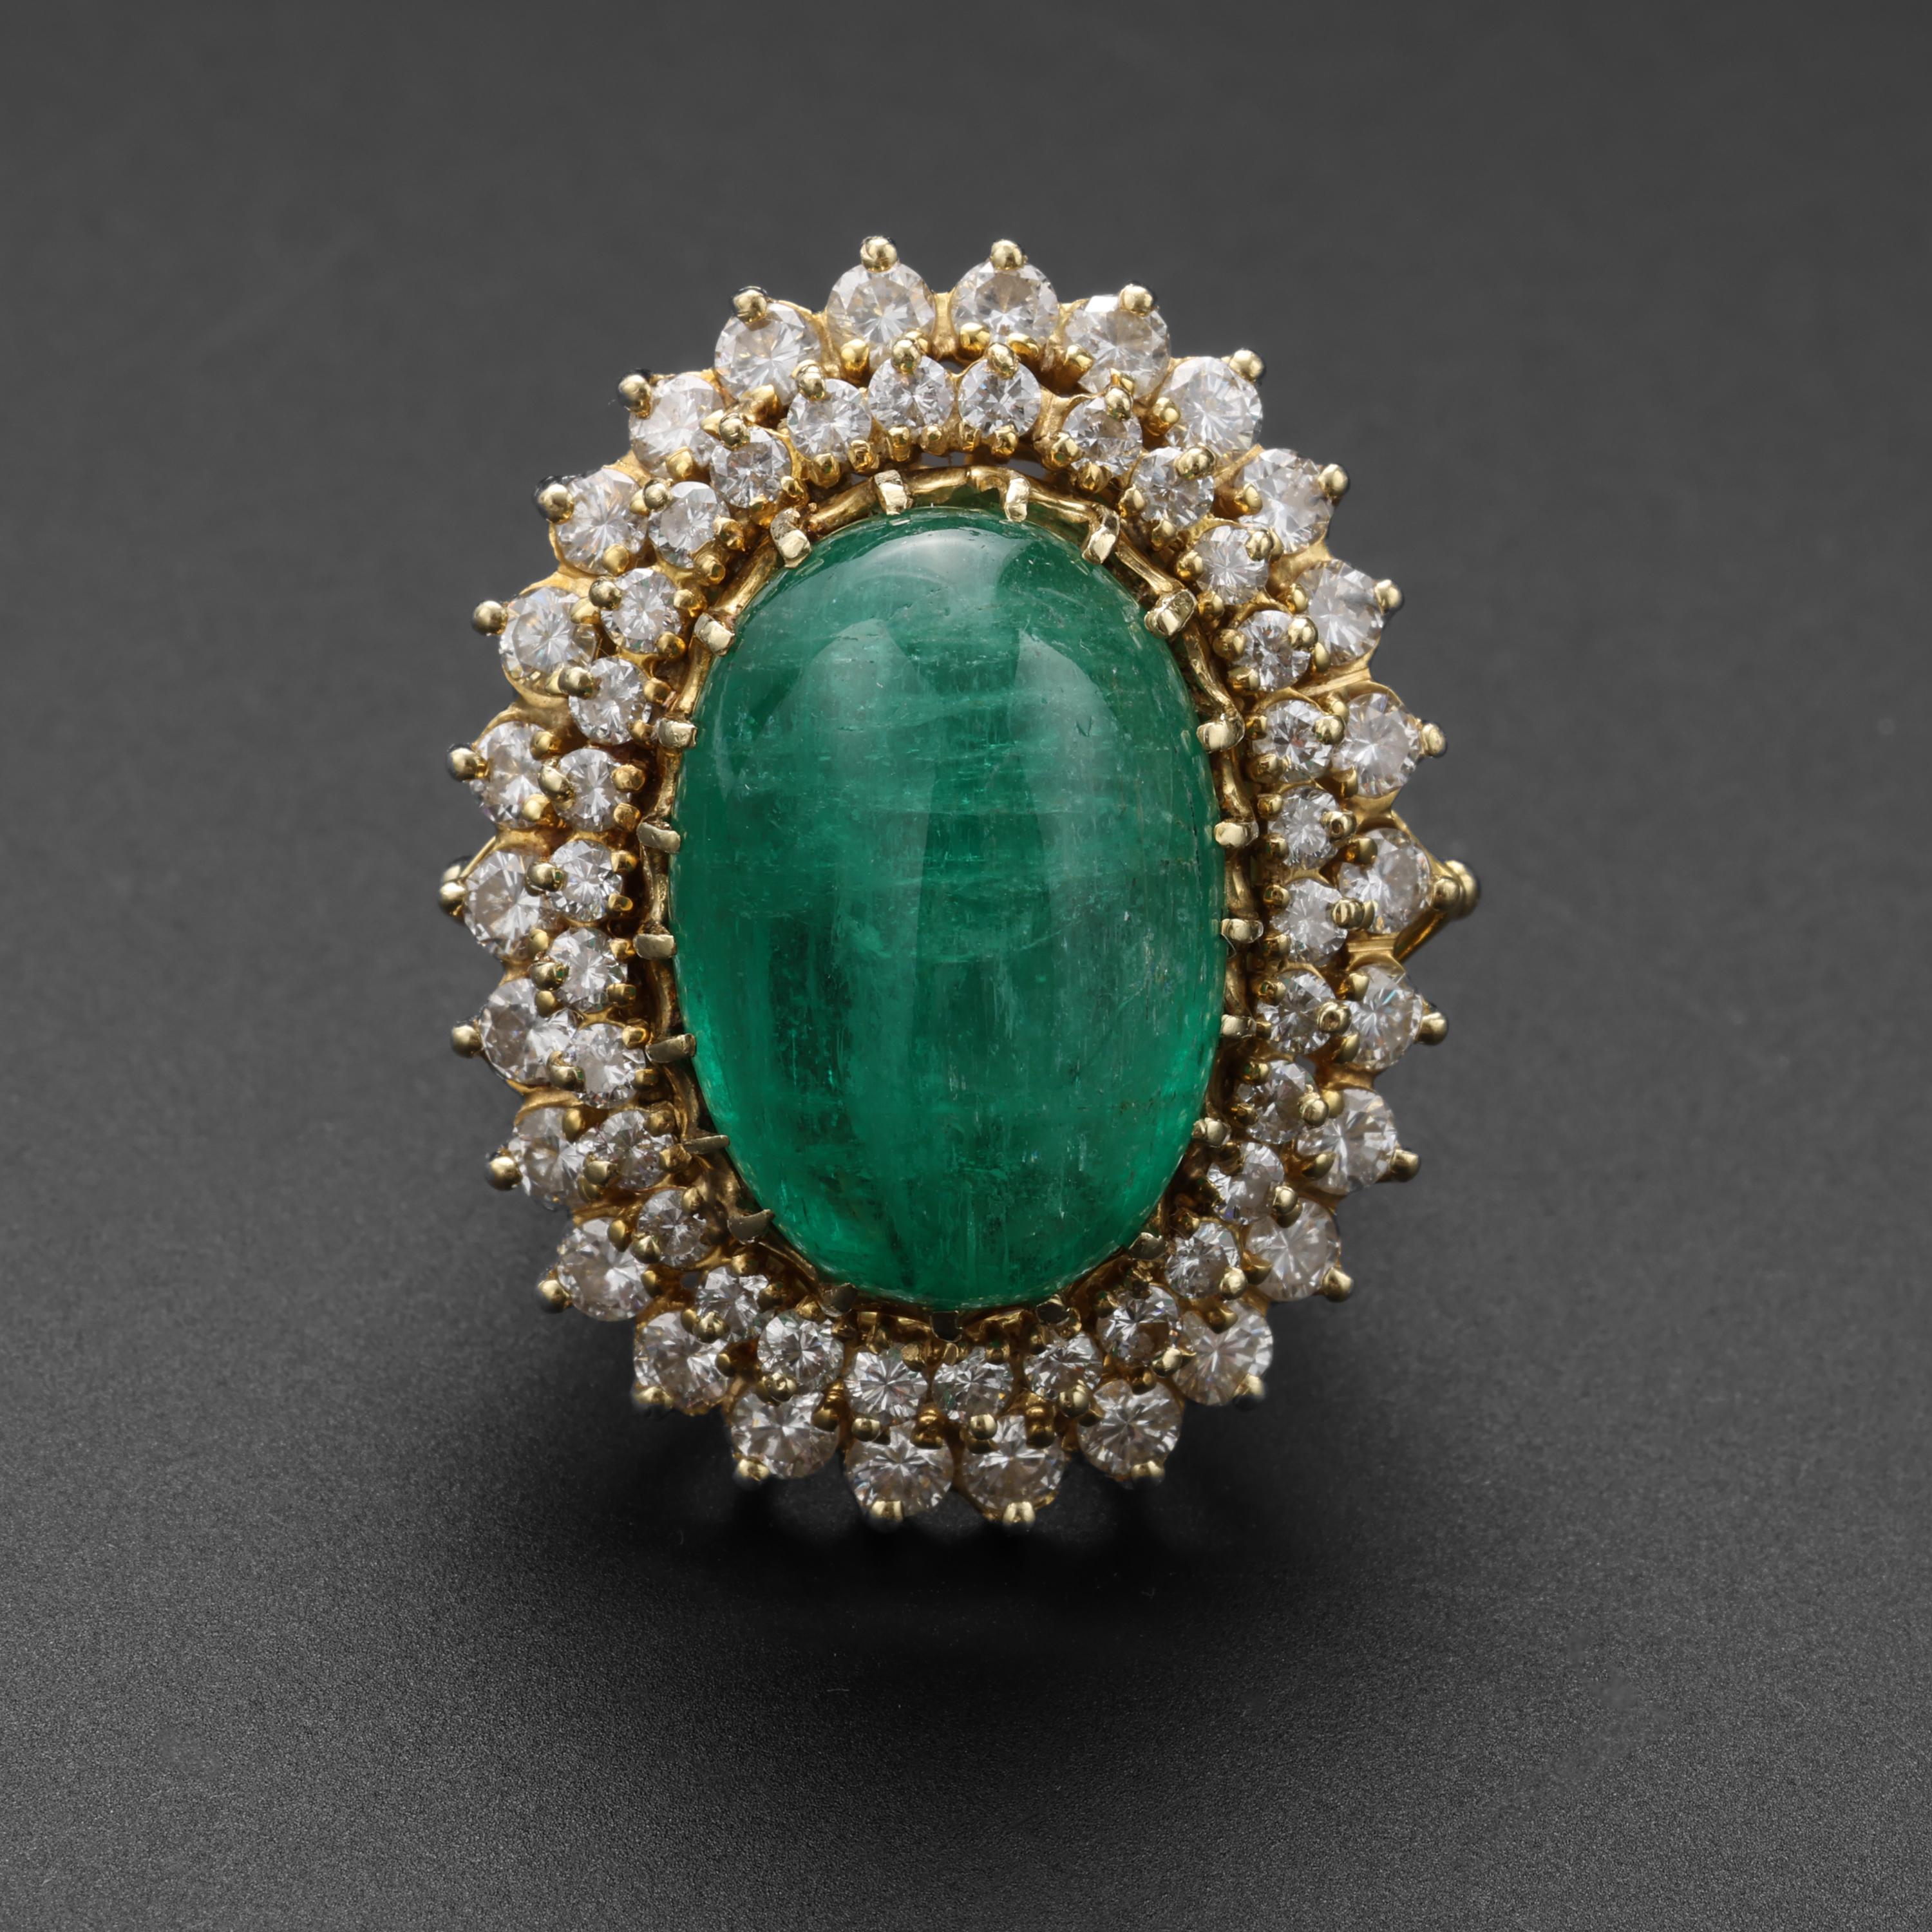 Un bijou spectaculaire et rare digne d'un doigt royal ! Cette magnifique bague en or jaune 14 carats, fabriquée à la main dans les années 1950, est ornée d'une énorme émeraude naturelle lumineuse, transparente et d'un vert vif de 20,5 carats